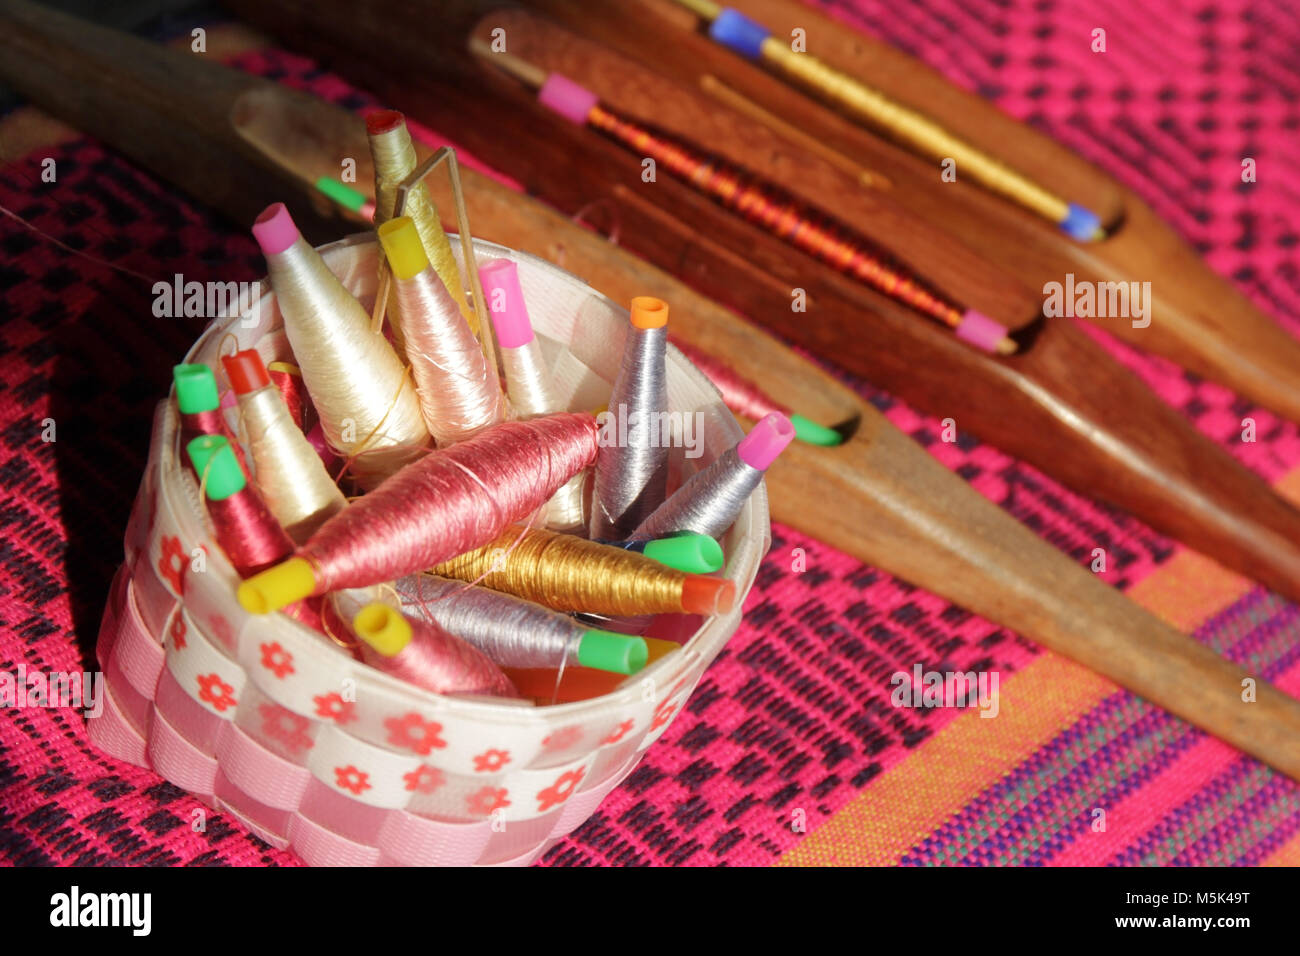 Bobines colorées dans le panier et de canette sur tissu de soie, le tissage traditionnel de la soie thaïlandaise Banque D'Images